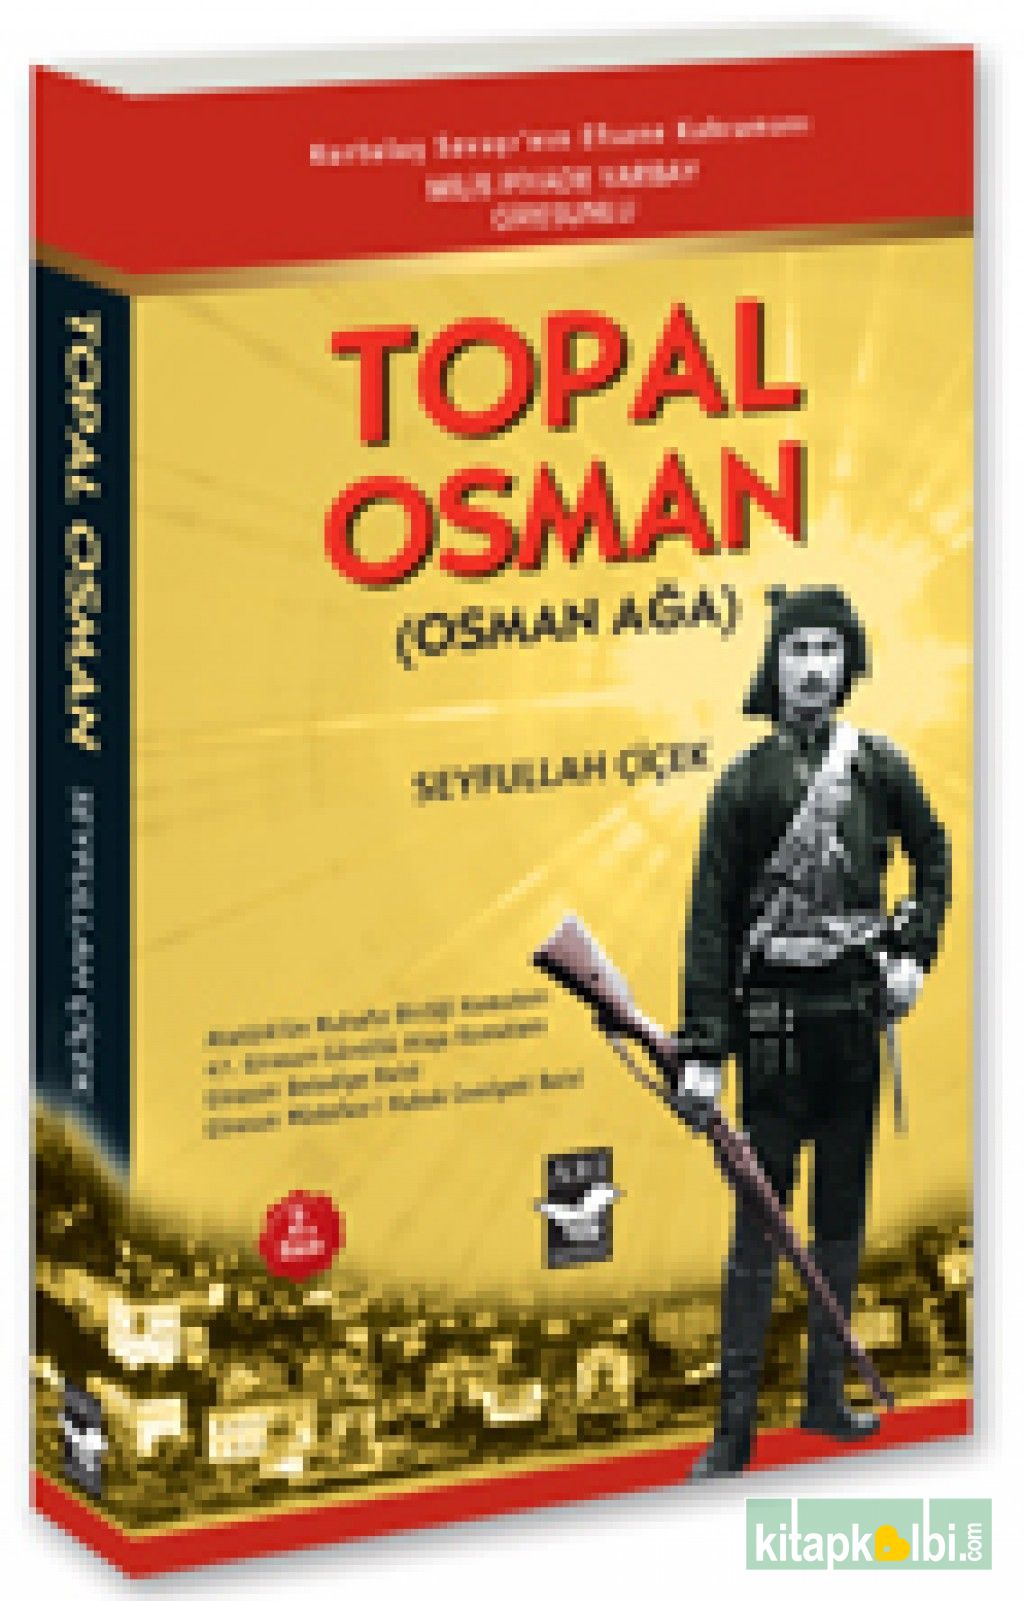 Topal Osman Osman Ağa